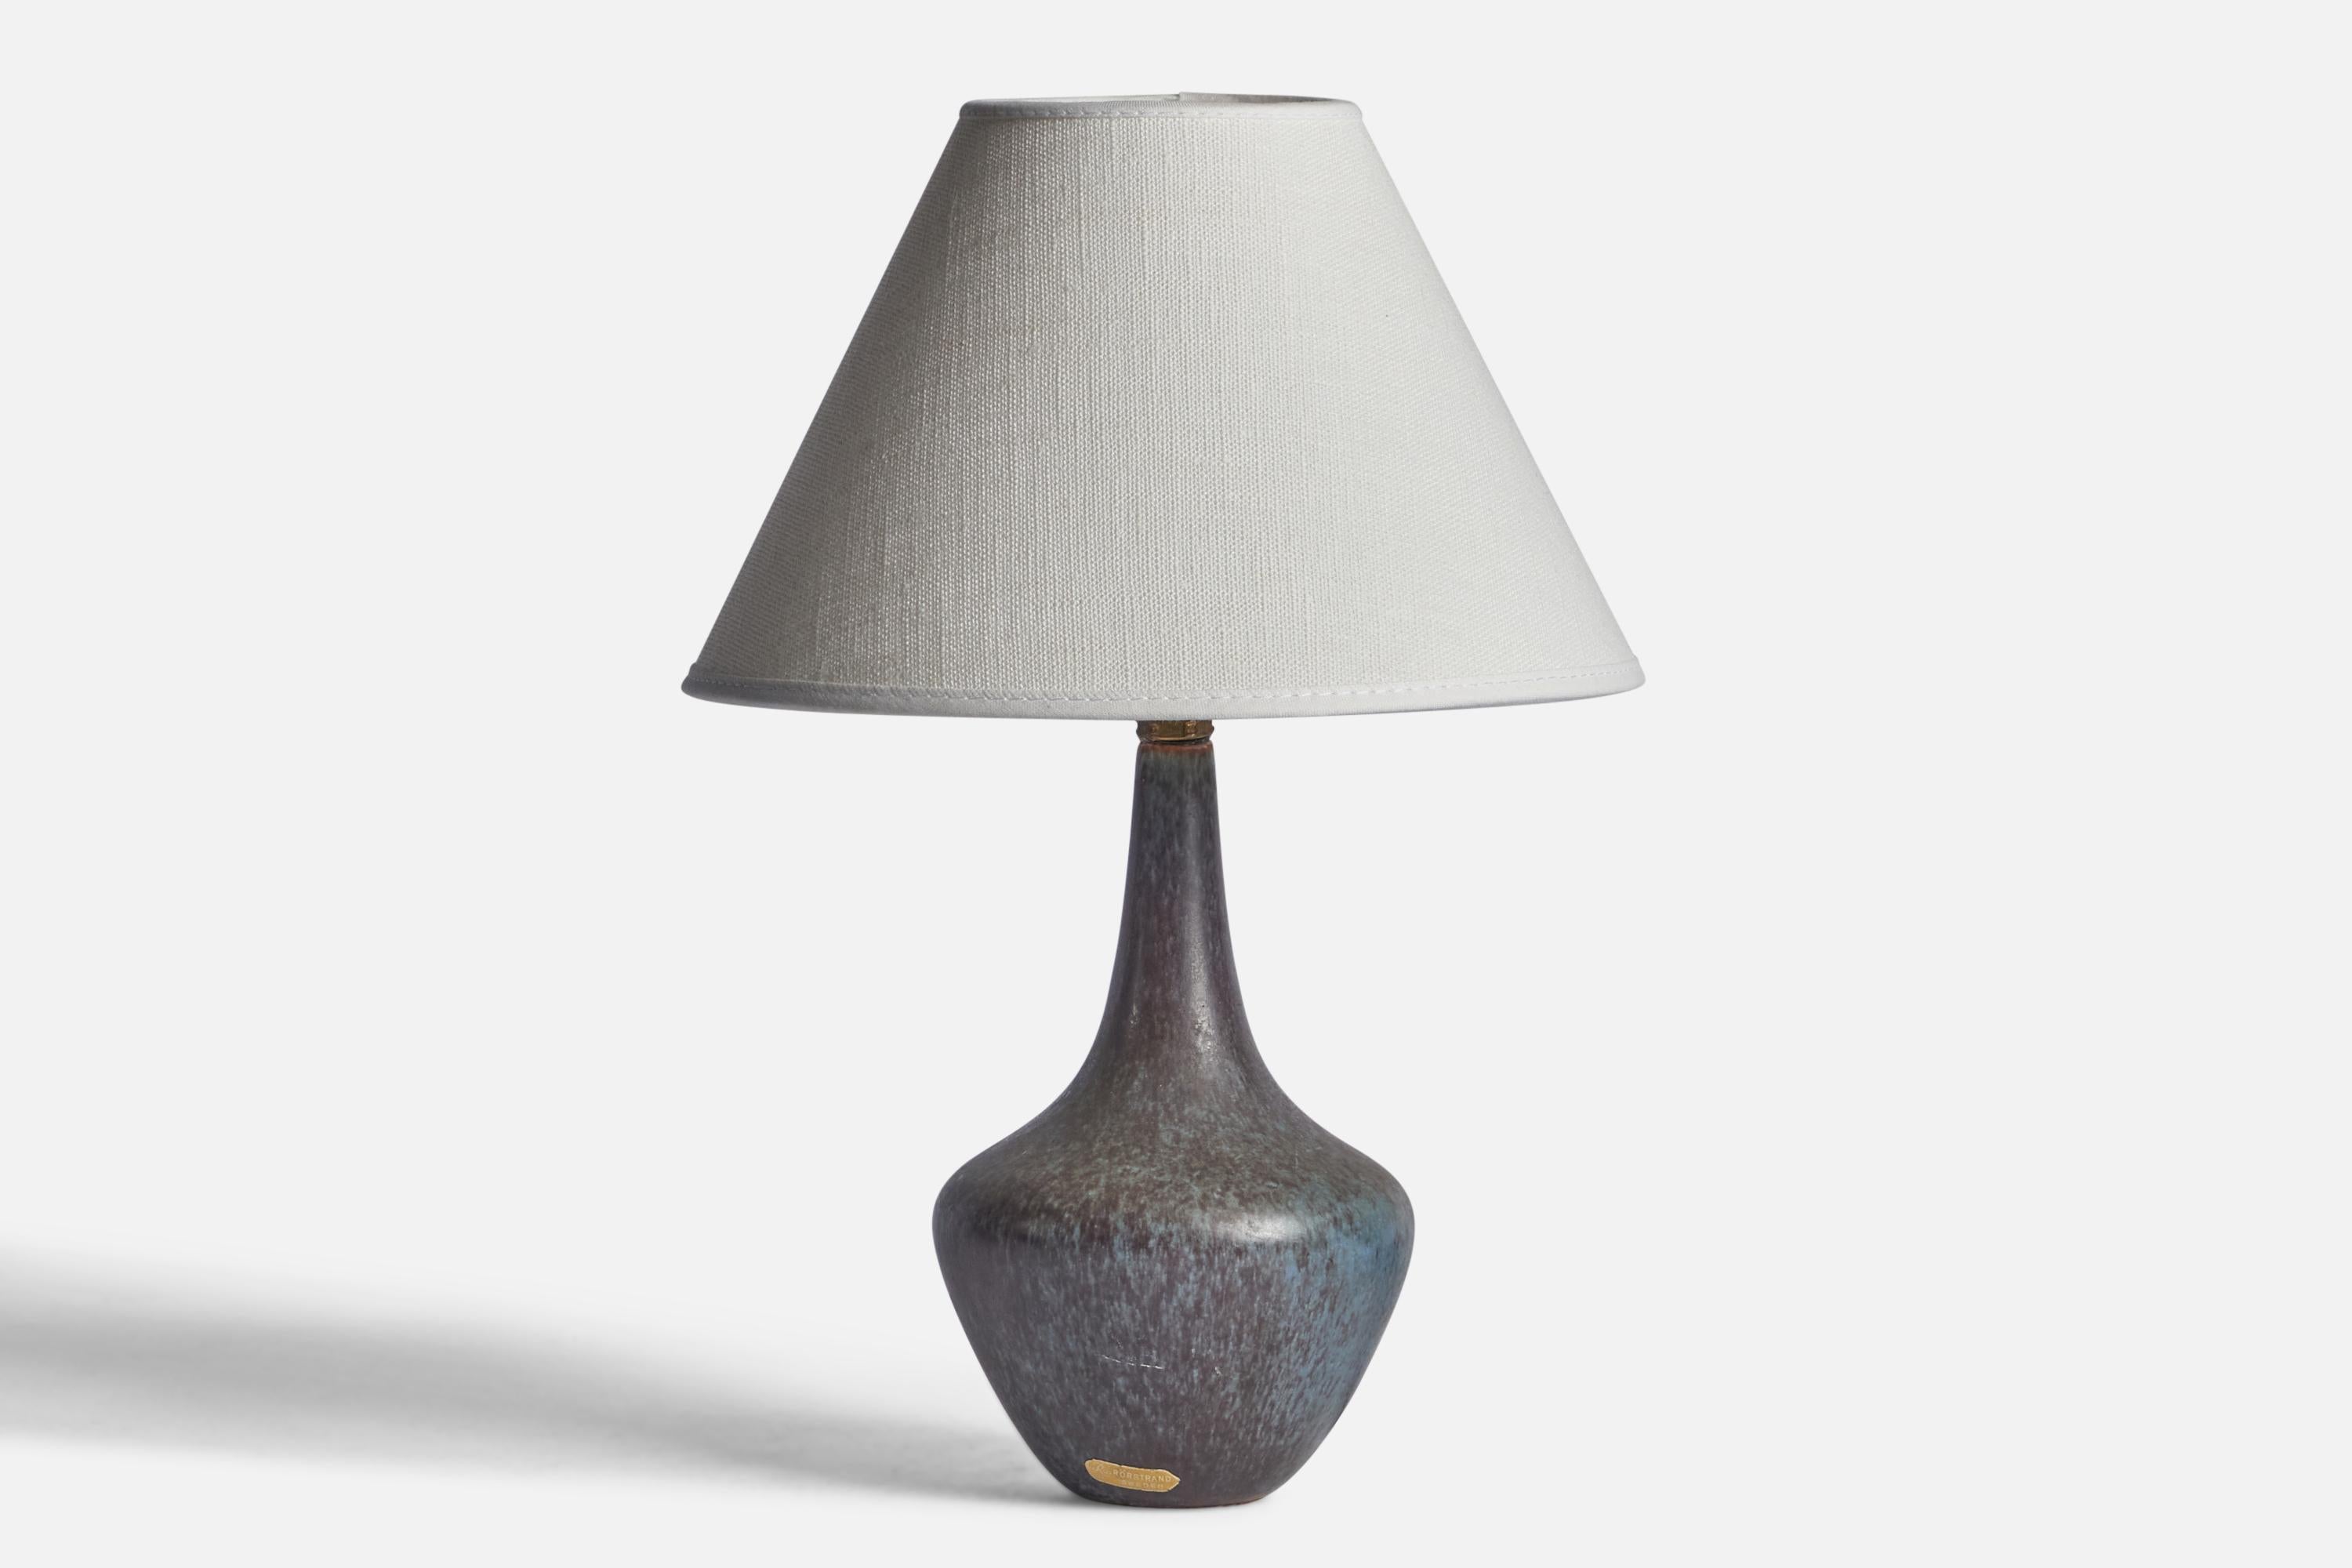 Lampe de table en grès émaillé bleu, conçue par Gunnar Nylund et produite par Rörstrand, Suède, années 1940.

Dimensions de la lampe (pouces) : 8.75